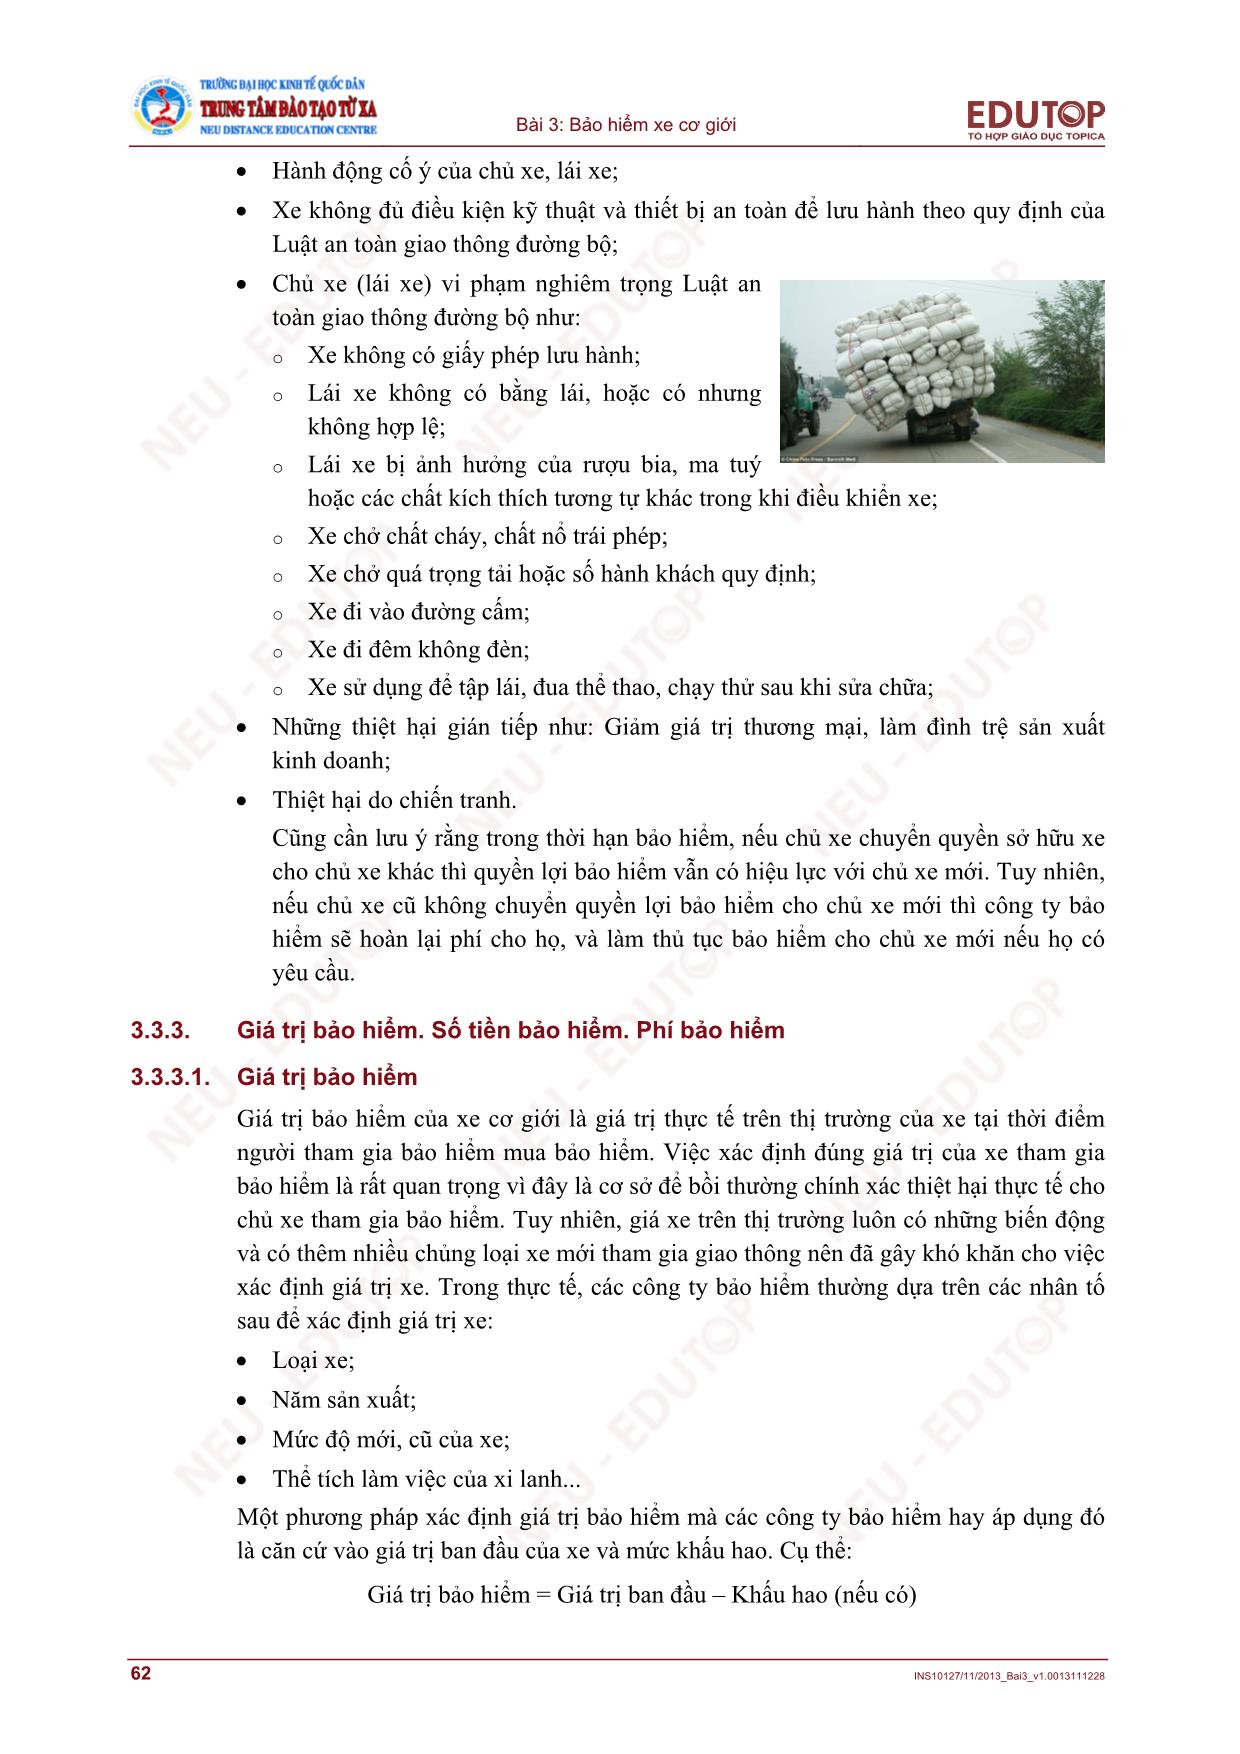 Bài giảng Bảo hiểm thương mại - Bài 3, Phần 2: Bảo hiểm xe cơ giới - Nguyễn Thị Lệ Huyền trang 8